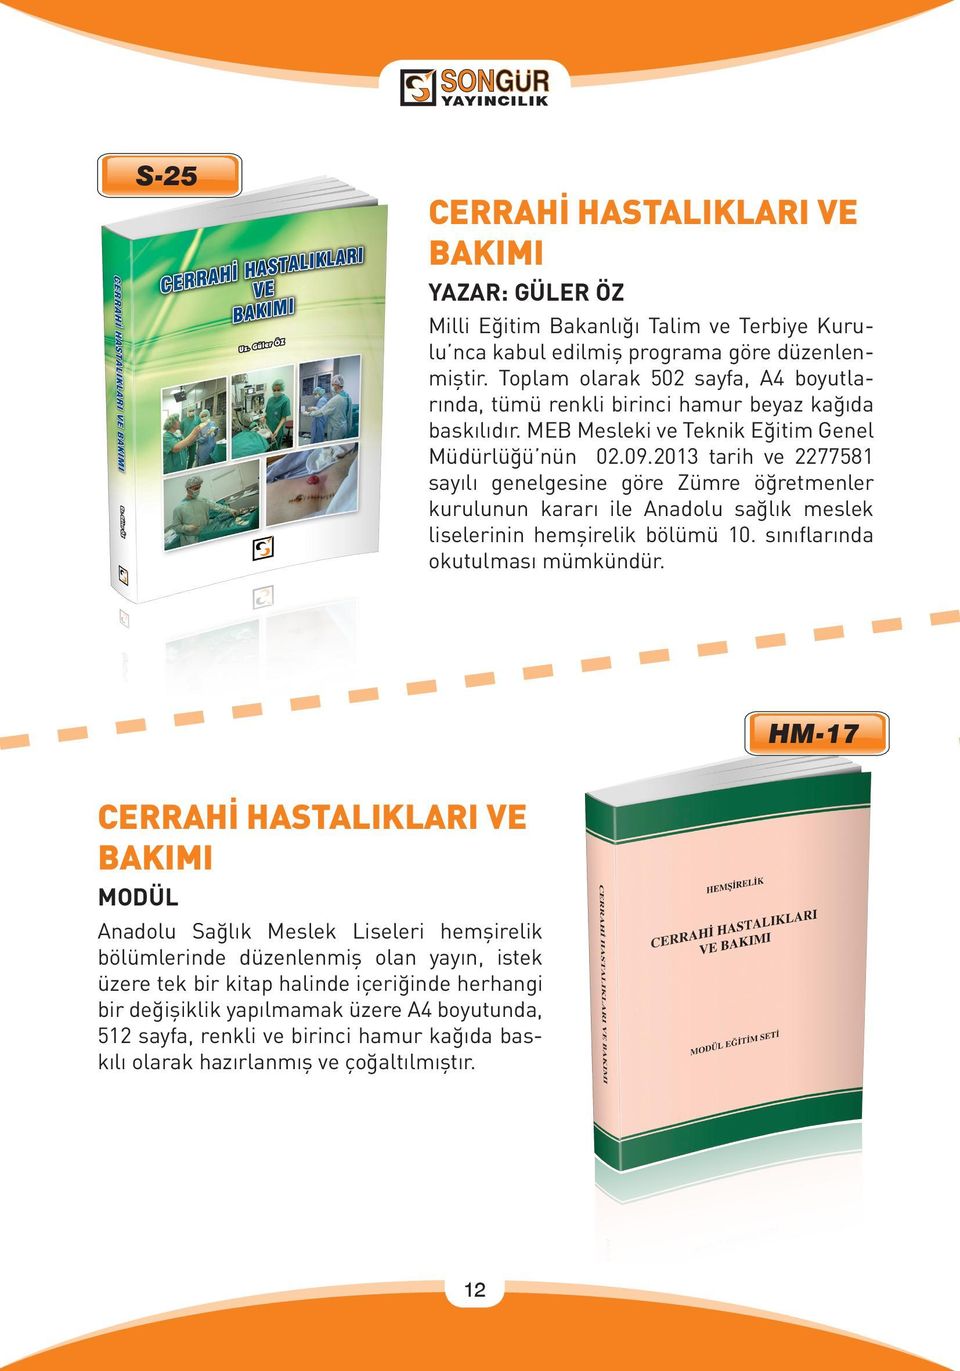 2013 tarih ve 2277581 sayılı genelgesine göre Zümre öğretmenler kurulunun kararı ile Anadolu sağlık meslek liselerinin hemşirelik bölümü 10. sınıflarında okutulması mümkündür.